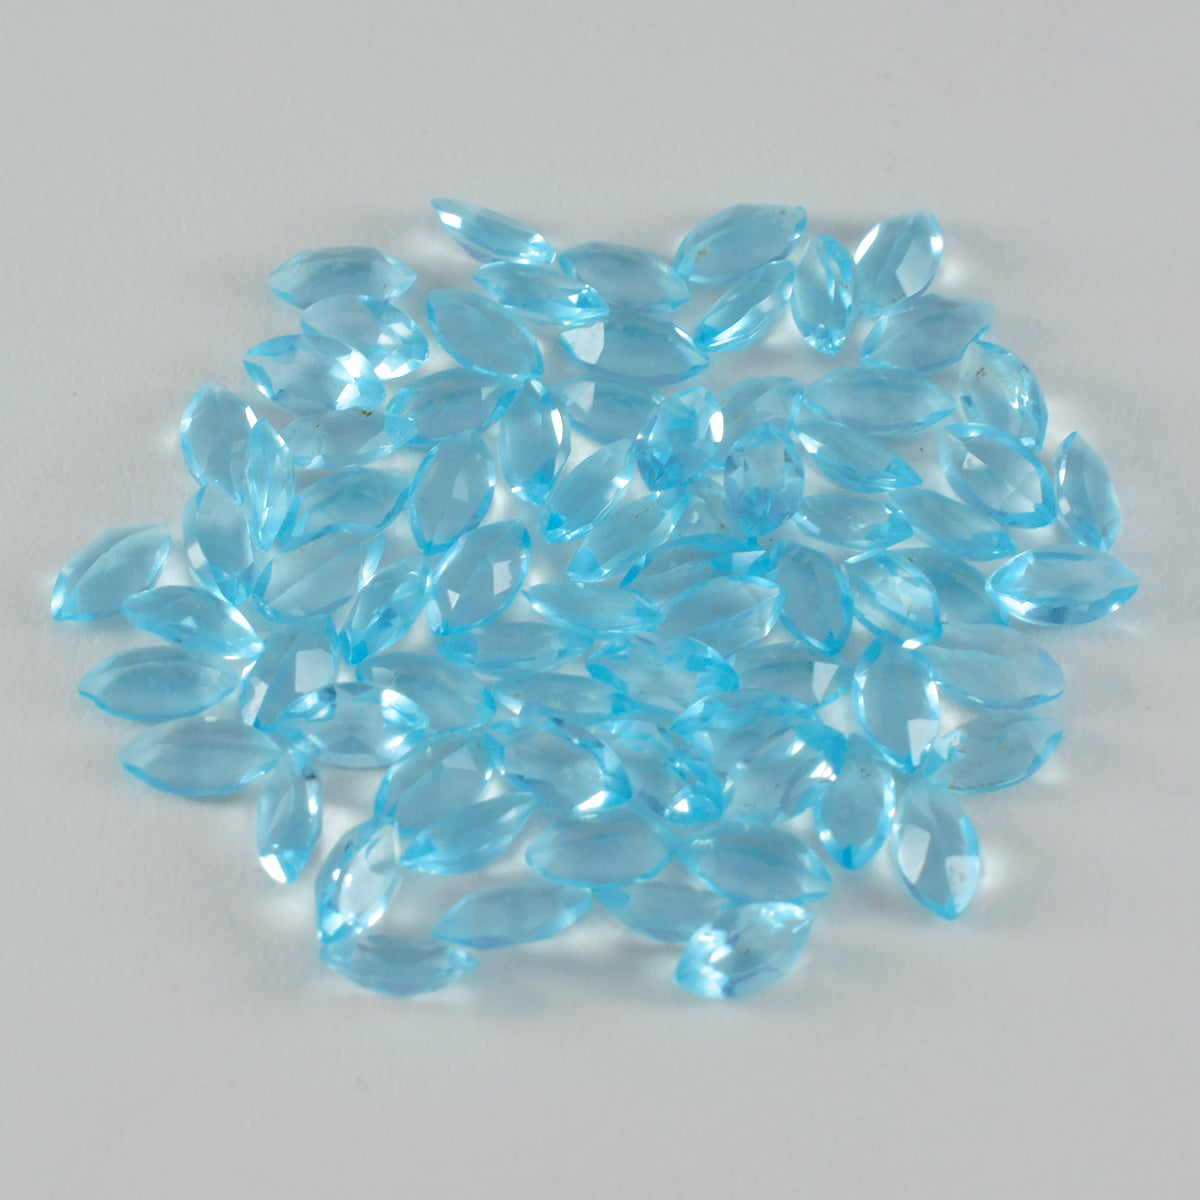 Riyogems 1 pieza de topacio azul CZ facetado 3x6 mm forma marquesa piedra preciosa suelta de calidad impresionante